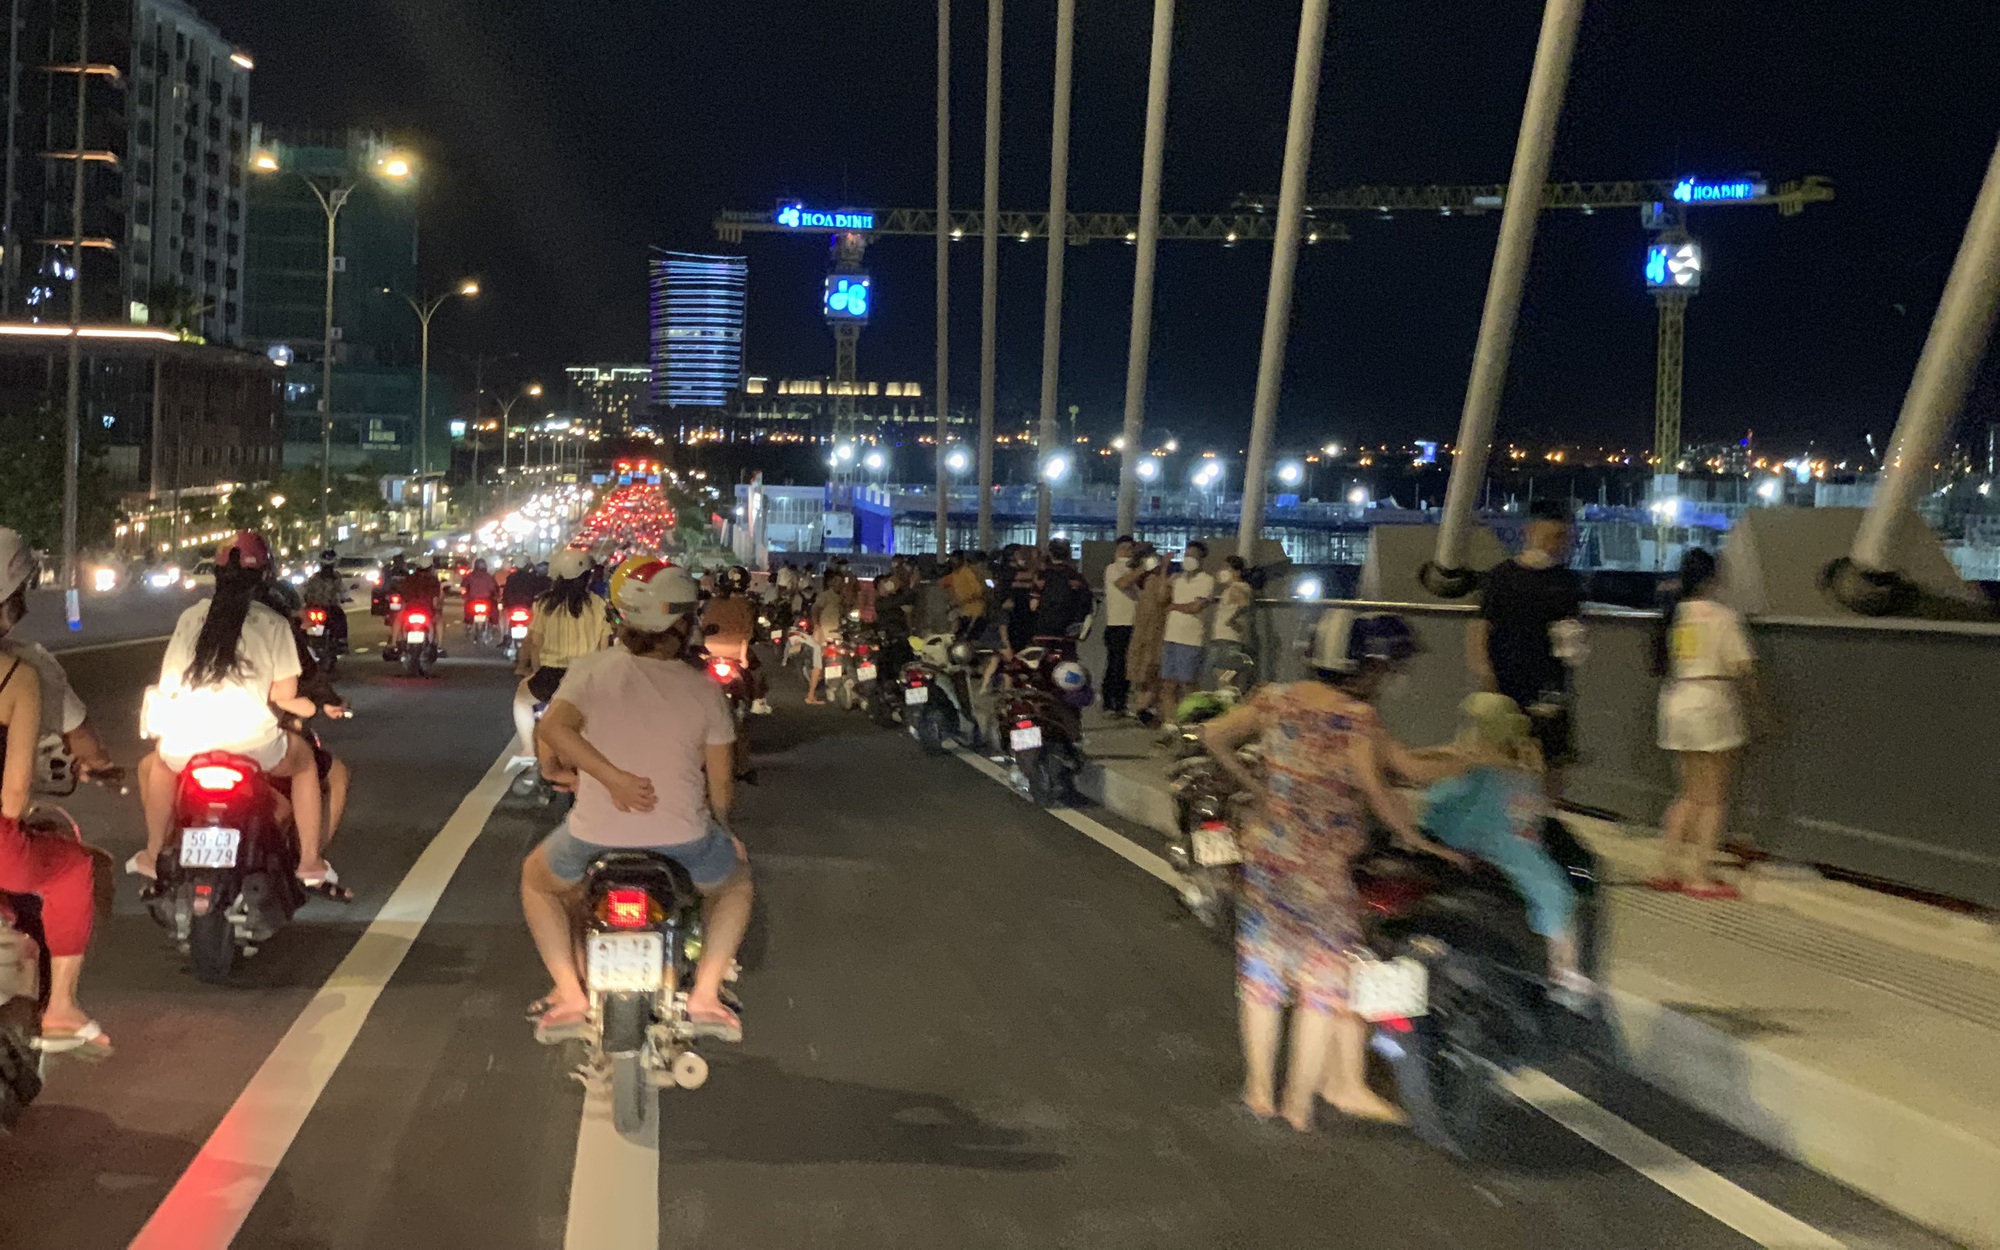 Cầu Thủ Thiêm 2 về đêm: Với vẻ đẹp ấn tượng của một trong những cây cầu hiện đại nhất Việt Nam, Cầu Thủ Thiêm 2 buổi tối rực rỡ hơn bao giờ hết. Chương trình ánh sáng và âm nhạc độc đáo khiến cho cả miền đất mới nở này trở nên quyến rũ và cuốn hút hơn. Đây là một trong những điểm đến đầy mới lạ tại Sài Gòn mà bạn không thể bỏ qua.